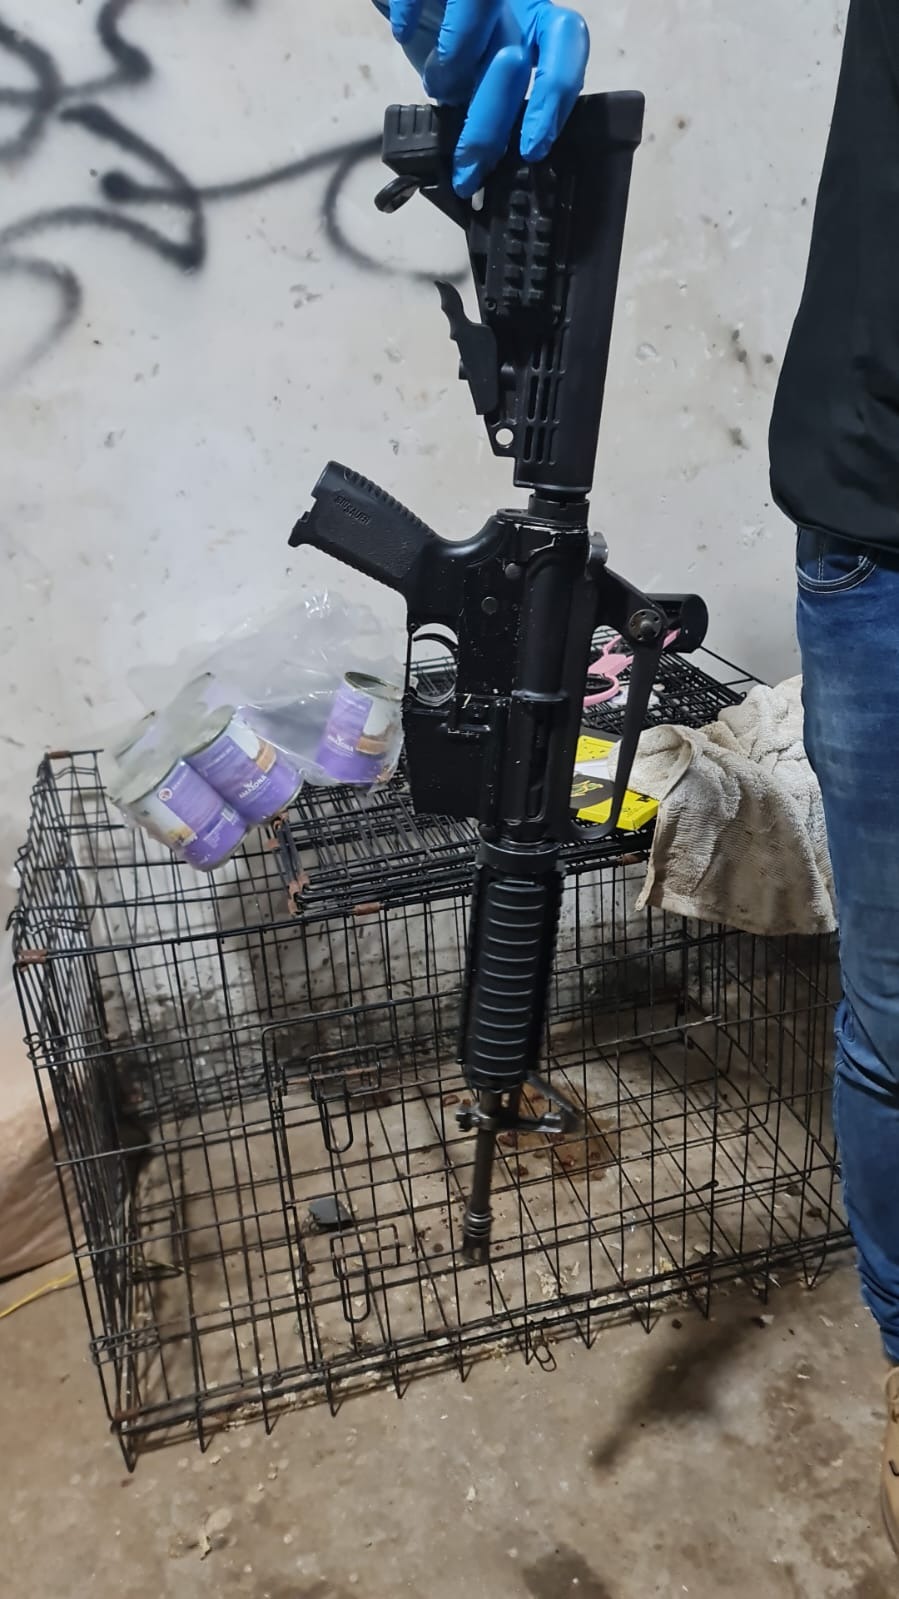 ضبط سلاح من نوع ام 16 ومبلغ كبير من المال في دير حنا